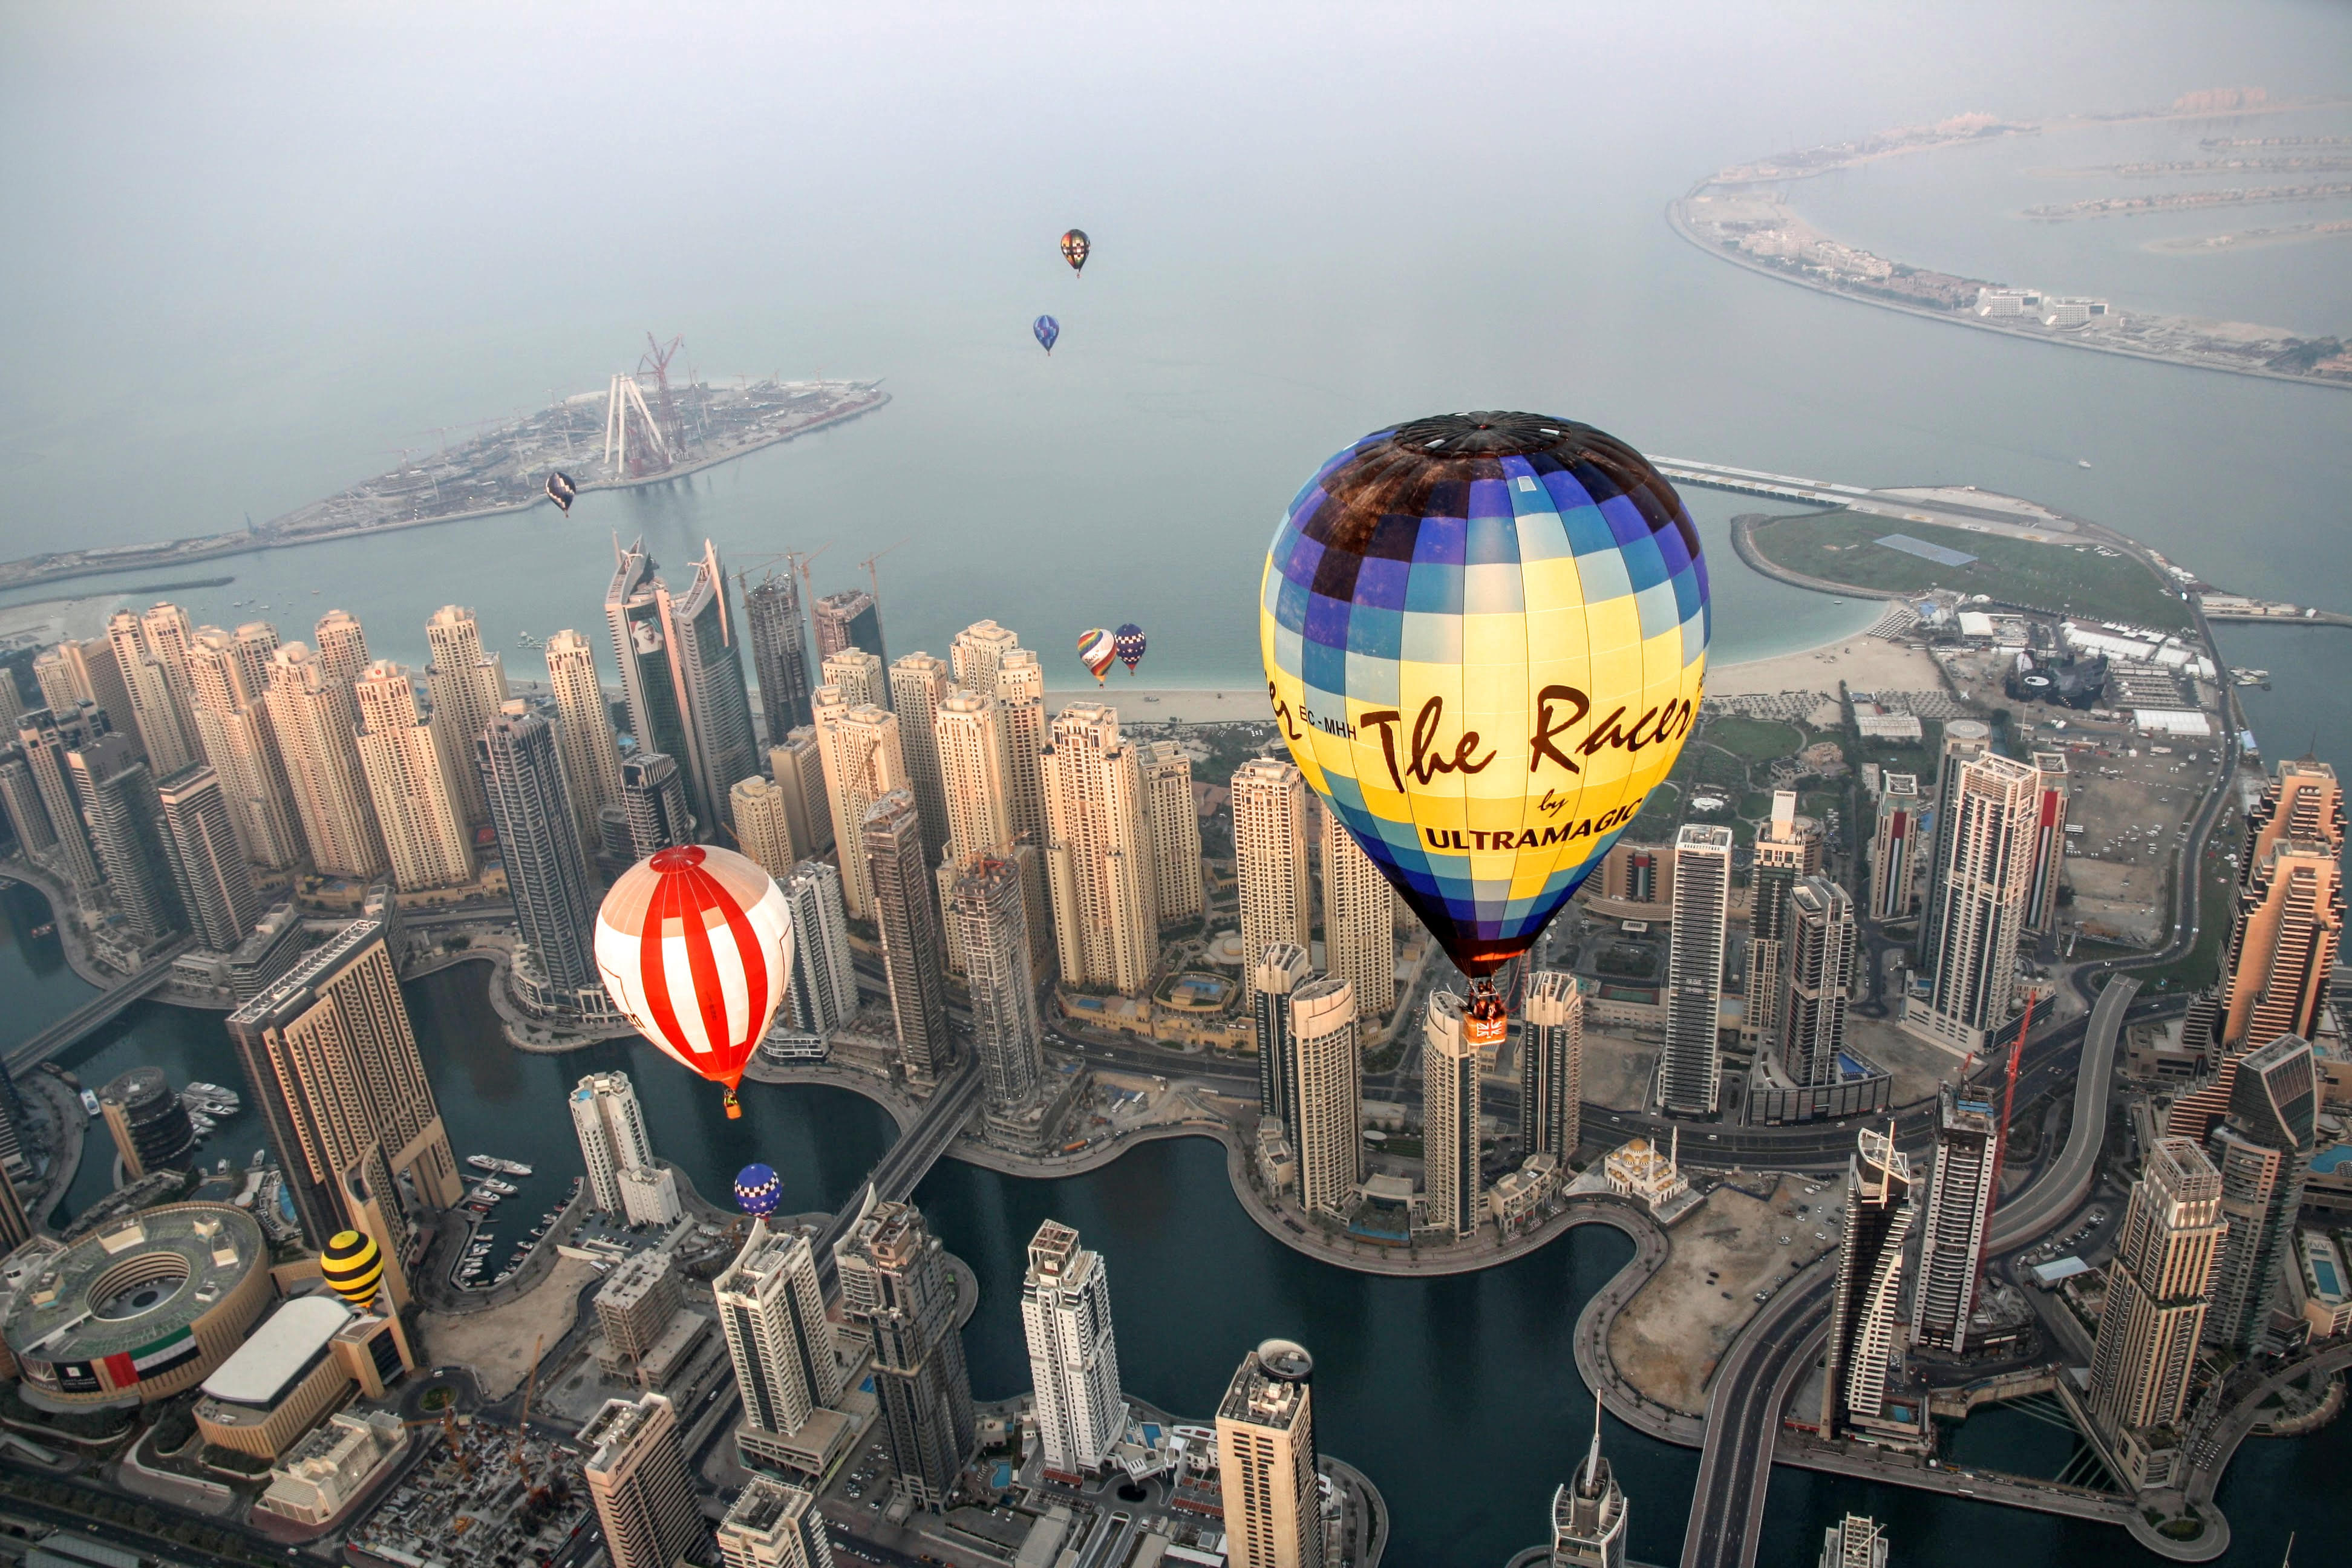 Hot Air Balloon Ride In Dubai